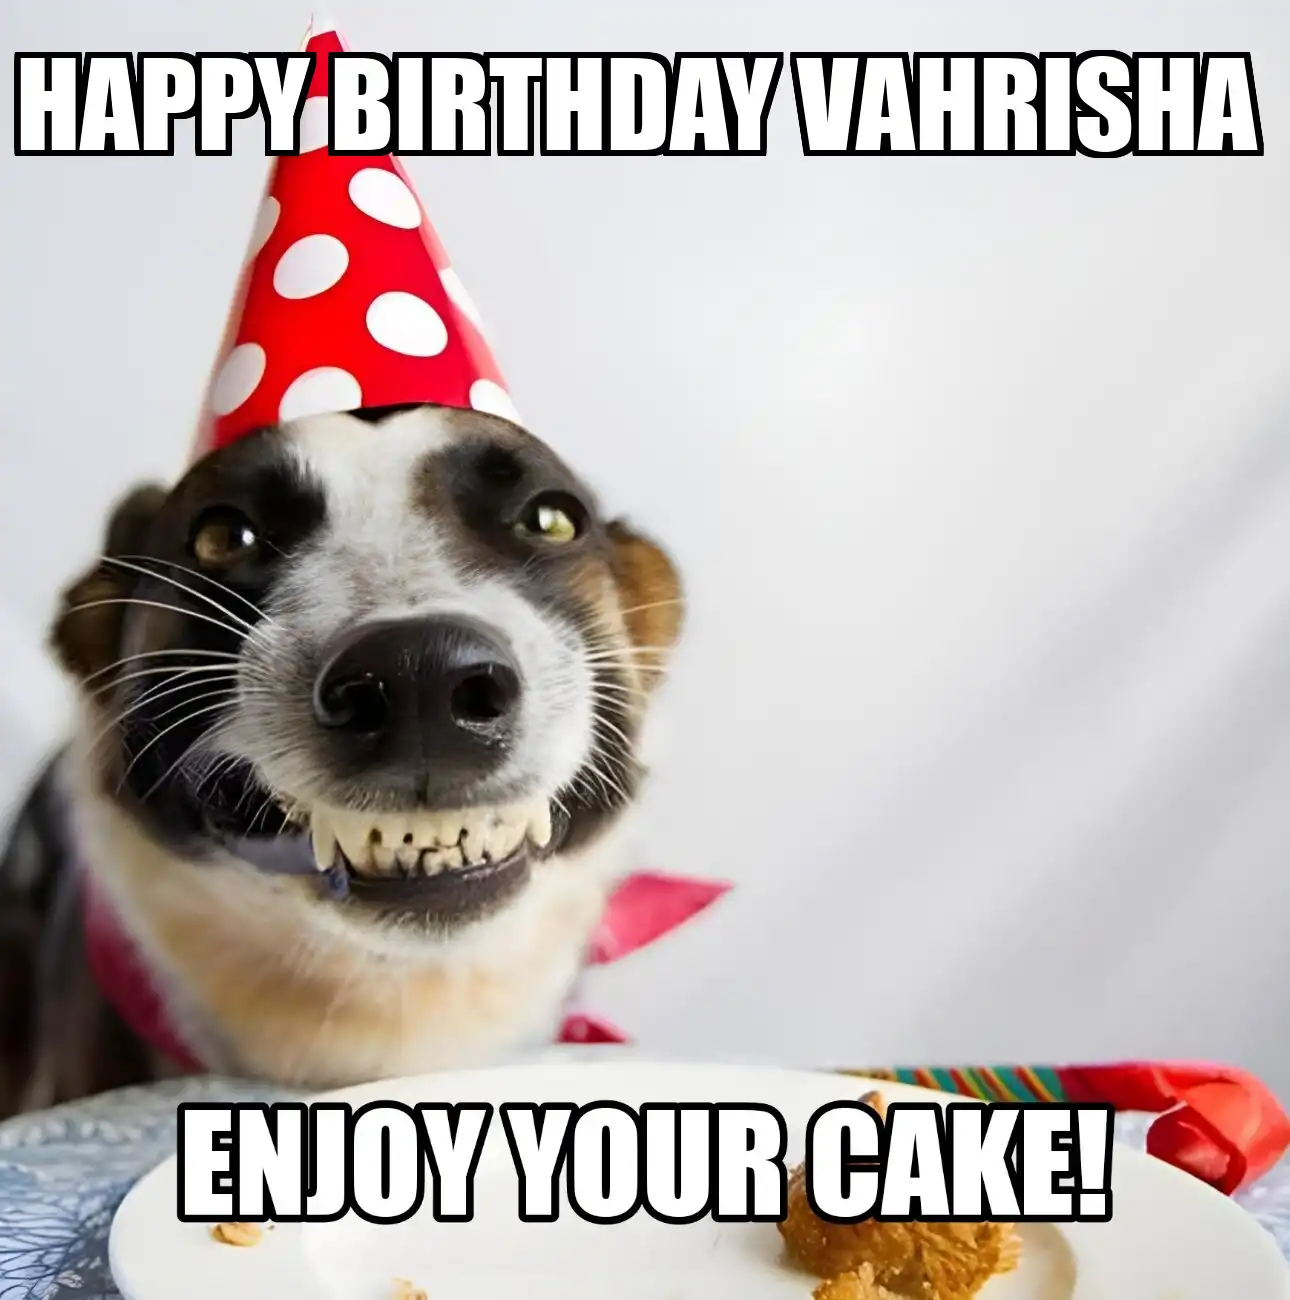 Happy Birthday Vahrisha Enjoy Your Cake Dog Meme